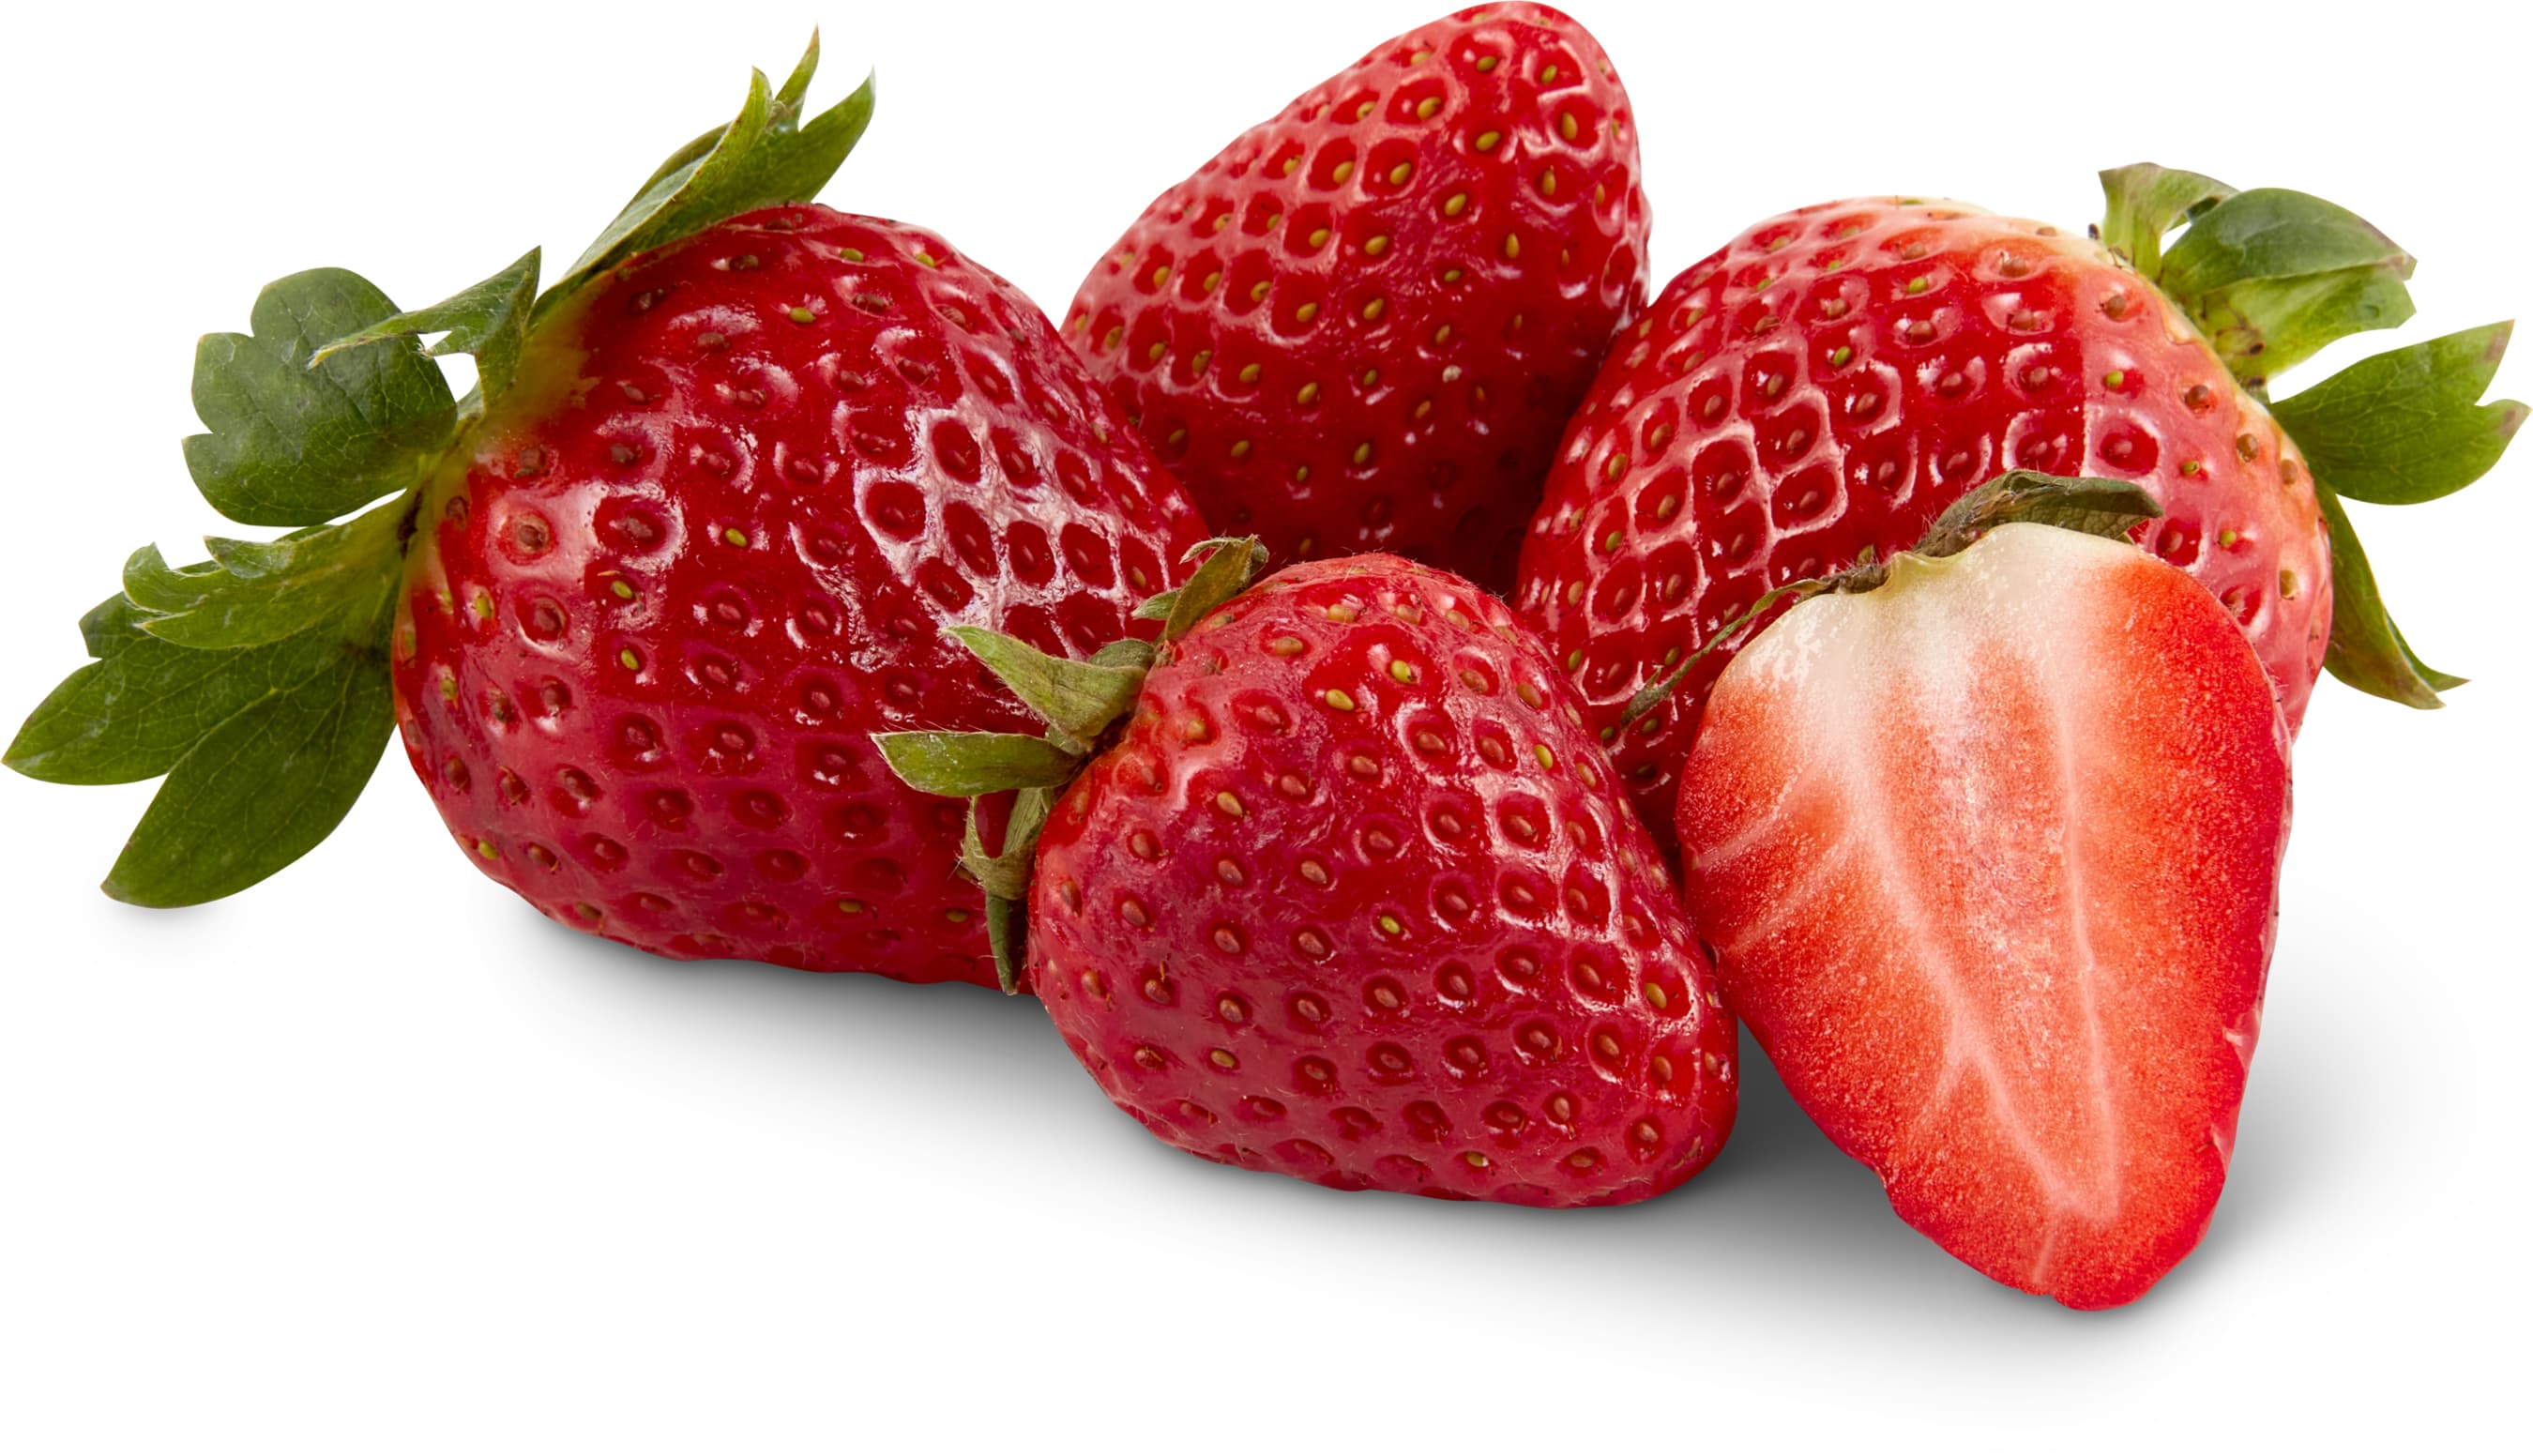 Bio Erdbeeren